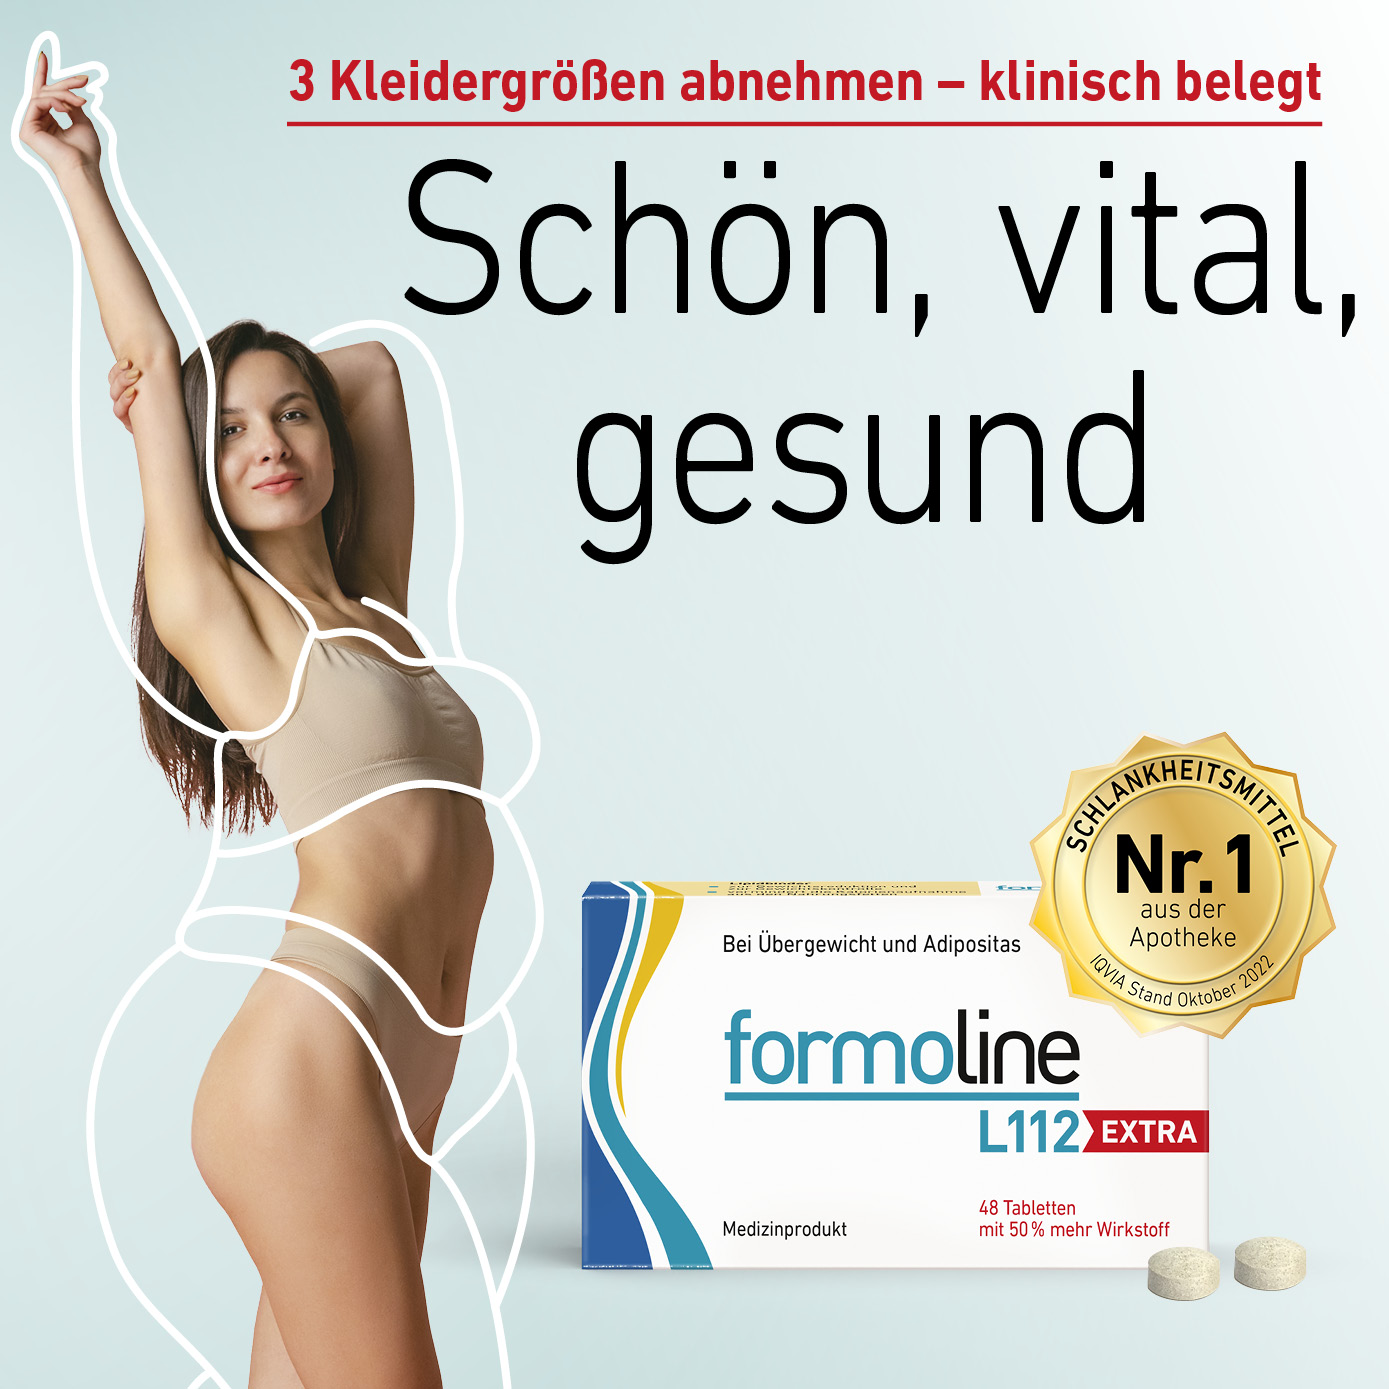 formoline - Schön, vital, gesund